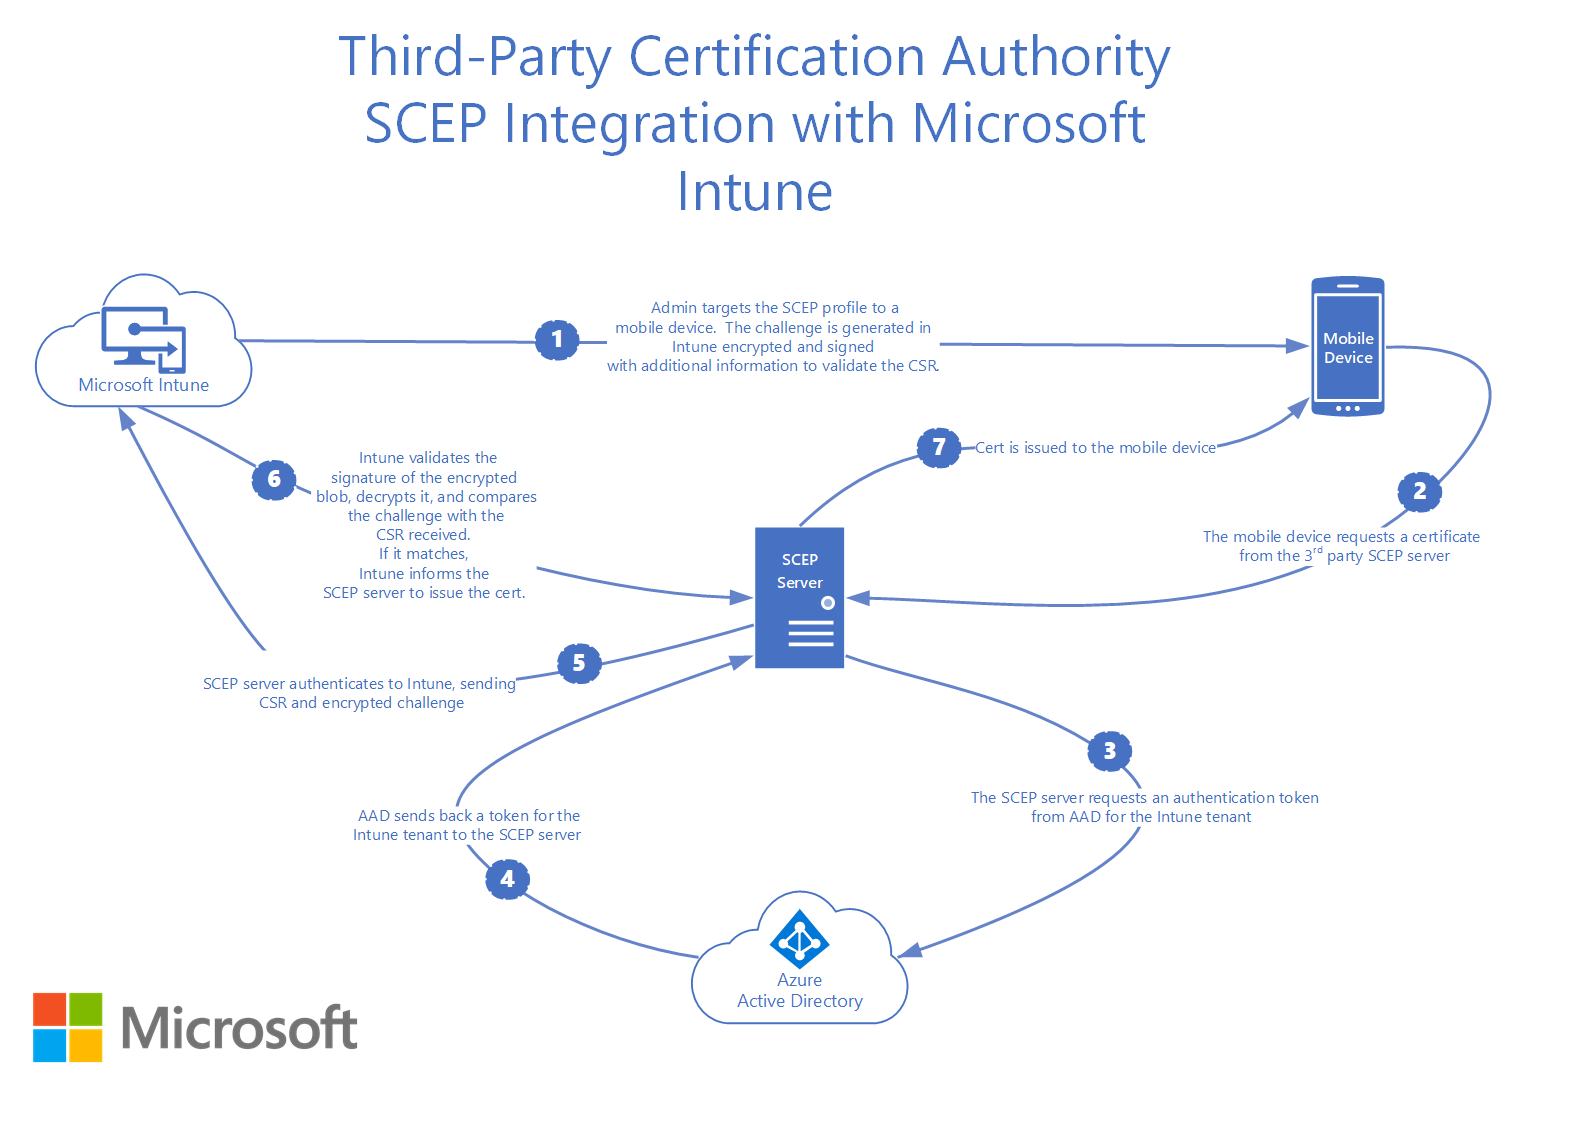 Jak protokół SCEP urzędu certyfikacji innej firmy integruje się z Microsoft Intune